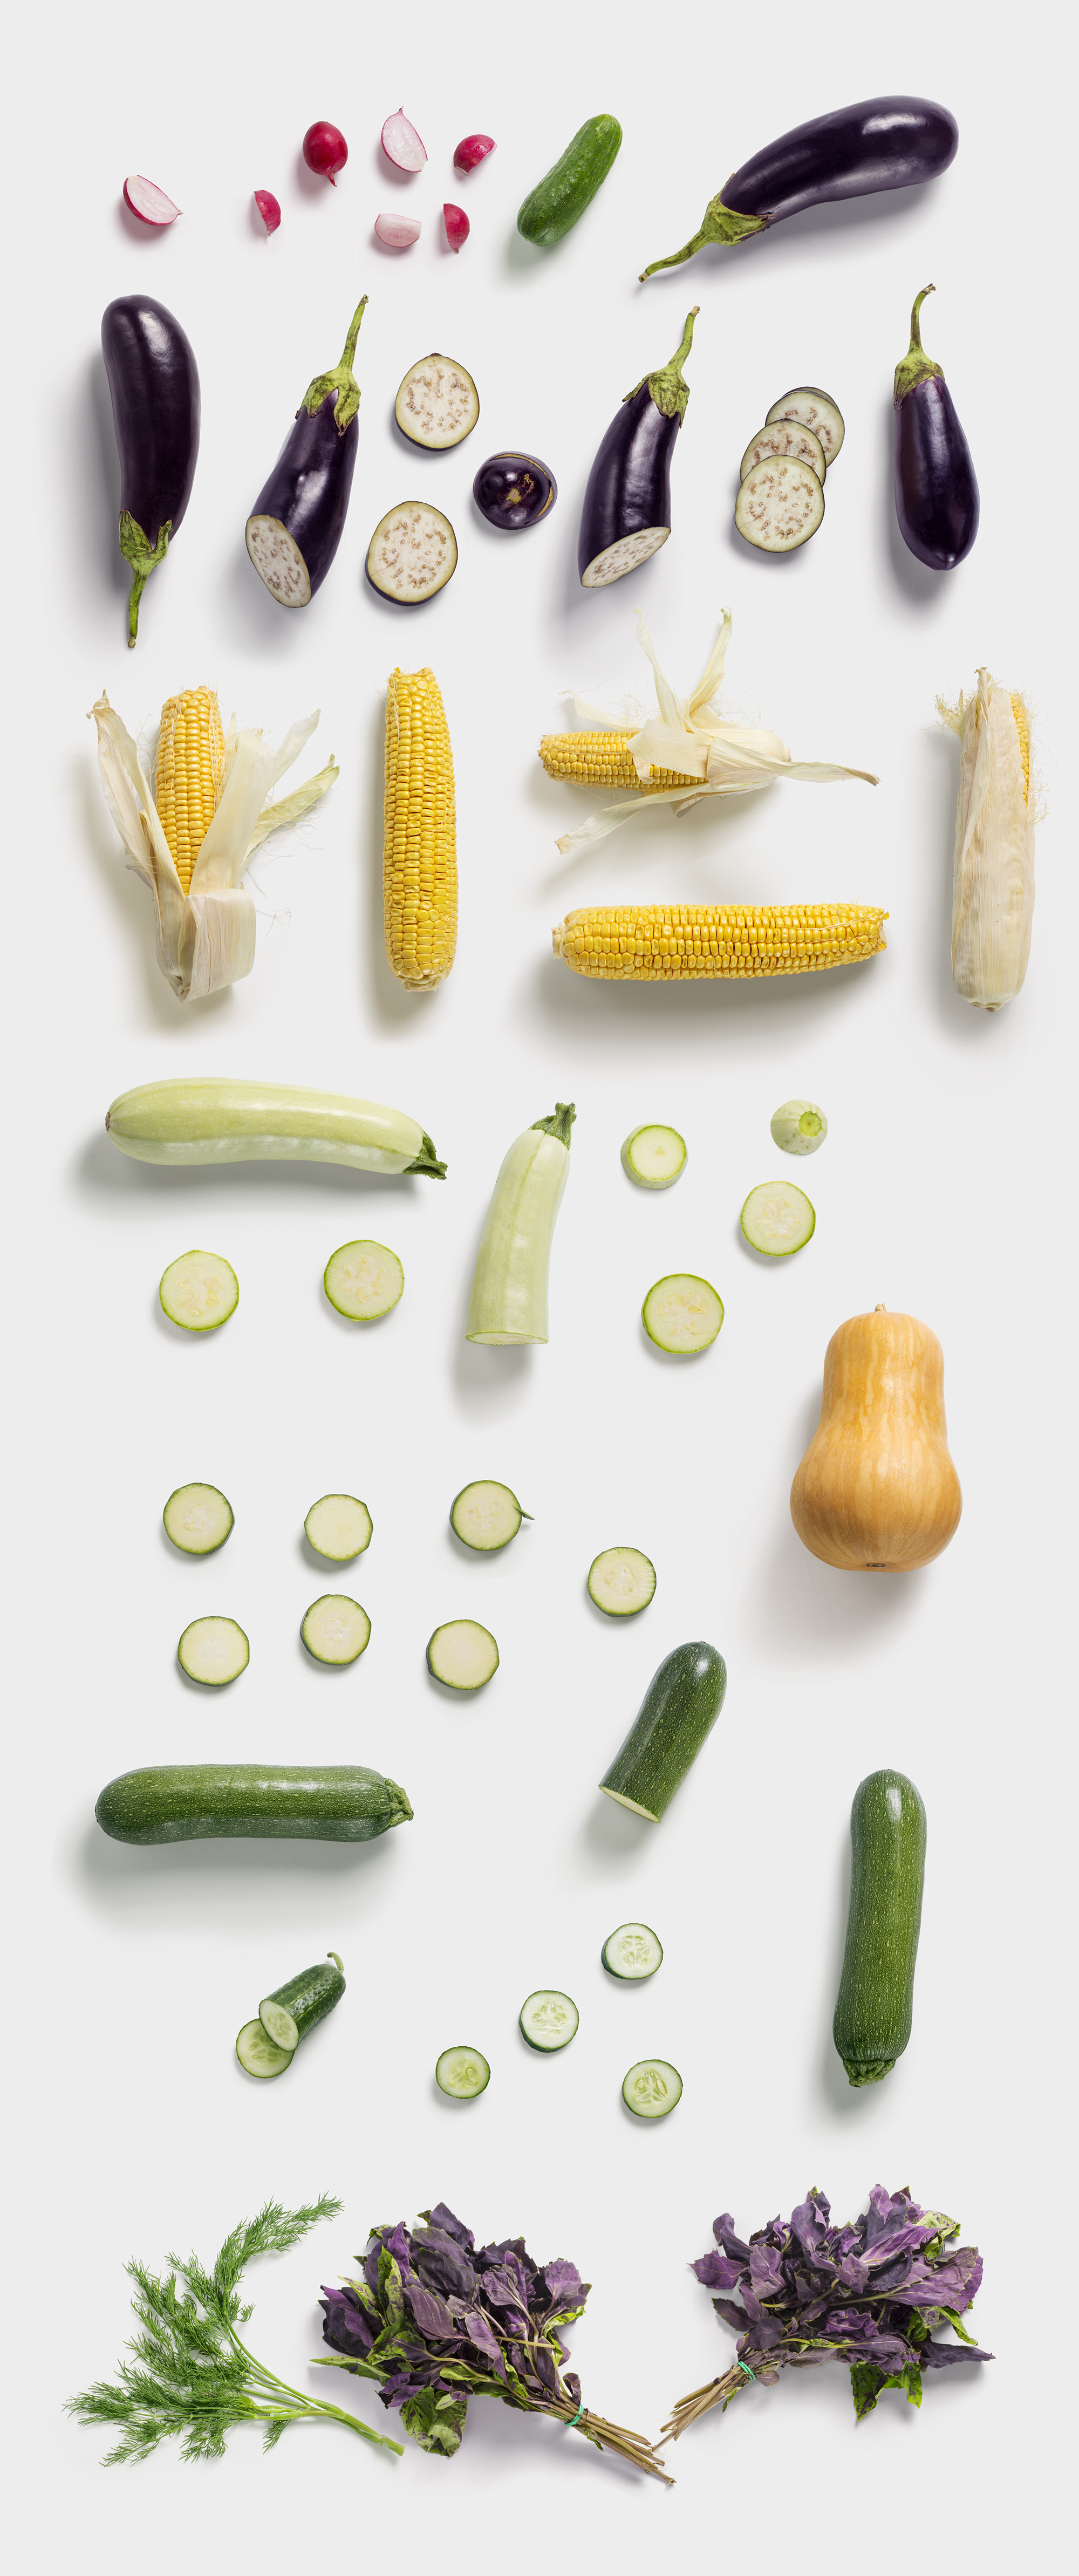 海量蔬菜水果高清实物照片样机素材Fruits and Vegetables插图(13)